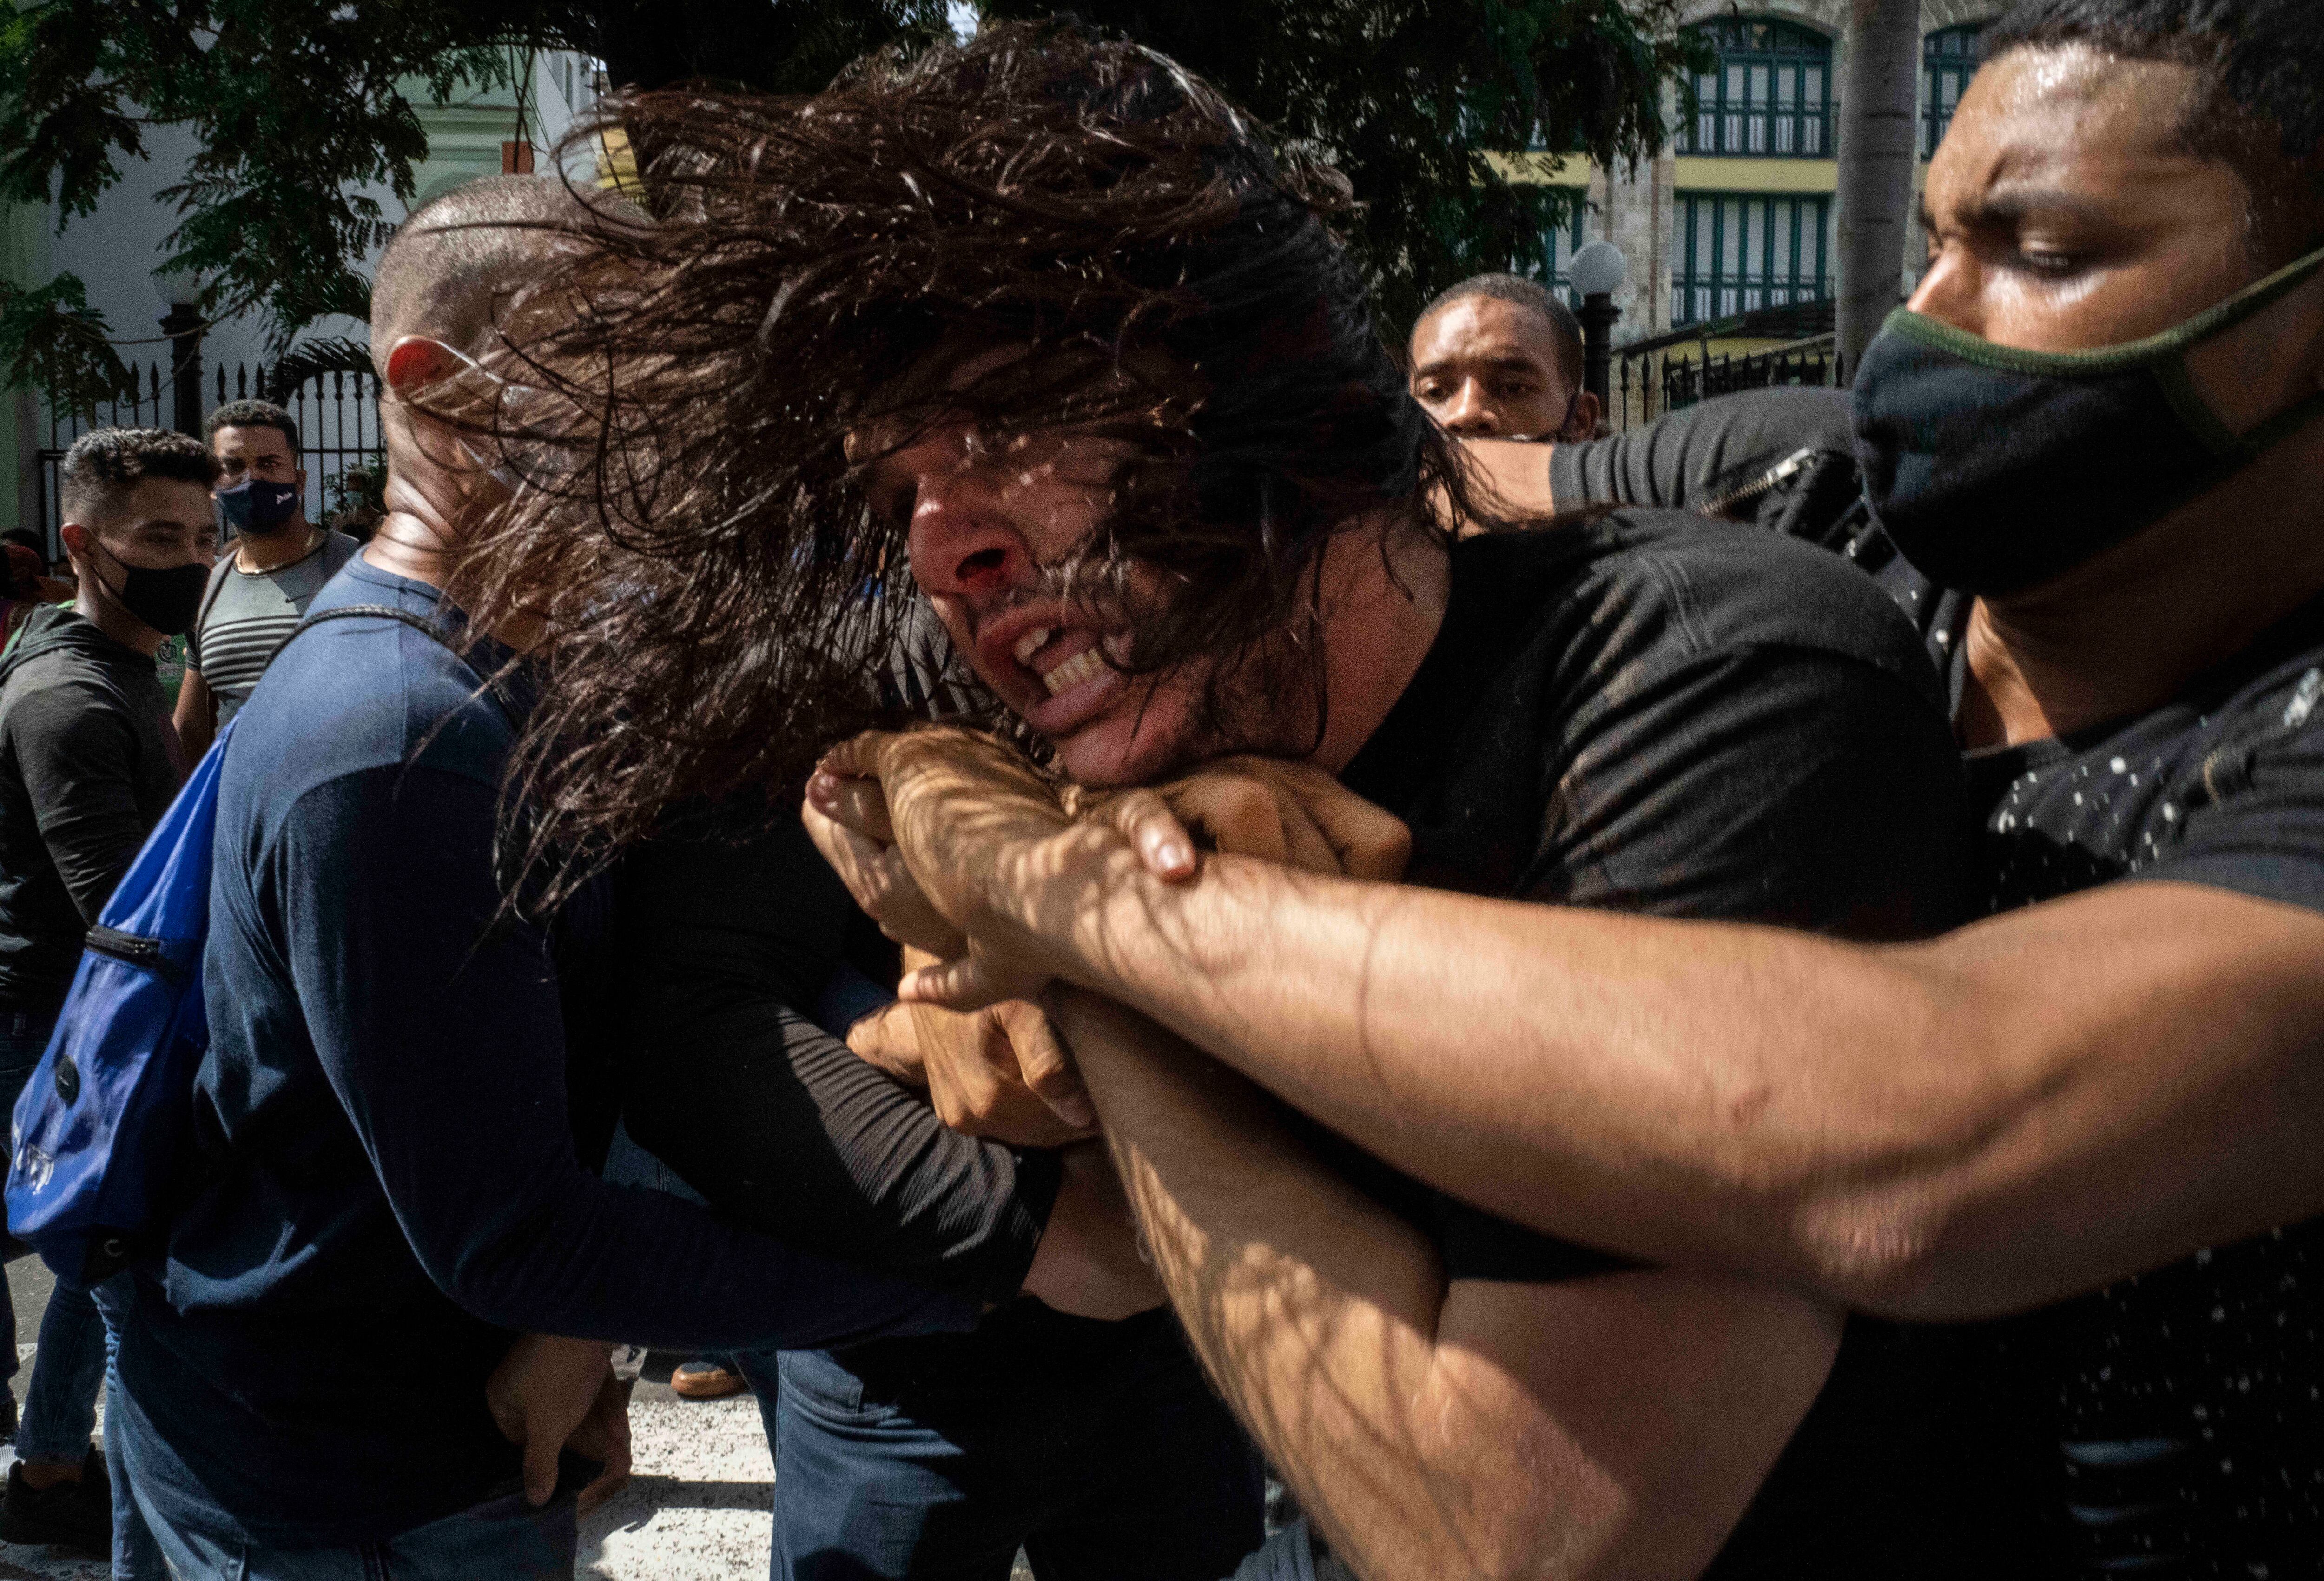 ARCHIVO - Policía encubierto detiene a un manifestante de oposición al gobierno en una protesta contra el desabastecimiento de alimentos y el alto precio de productos alimenticios, en La Habana, Cuba, el 11 de julio de 2021. (AP Foto/Ramón Espinosa, Archivo)